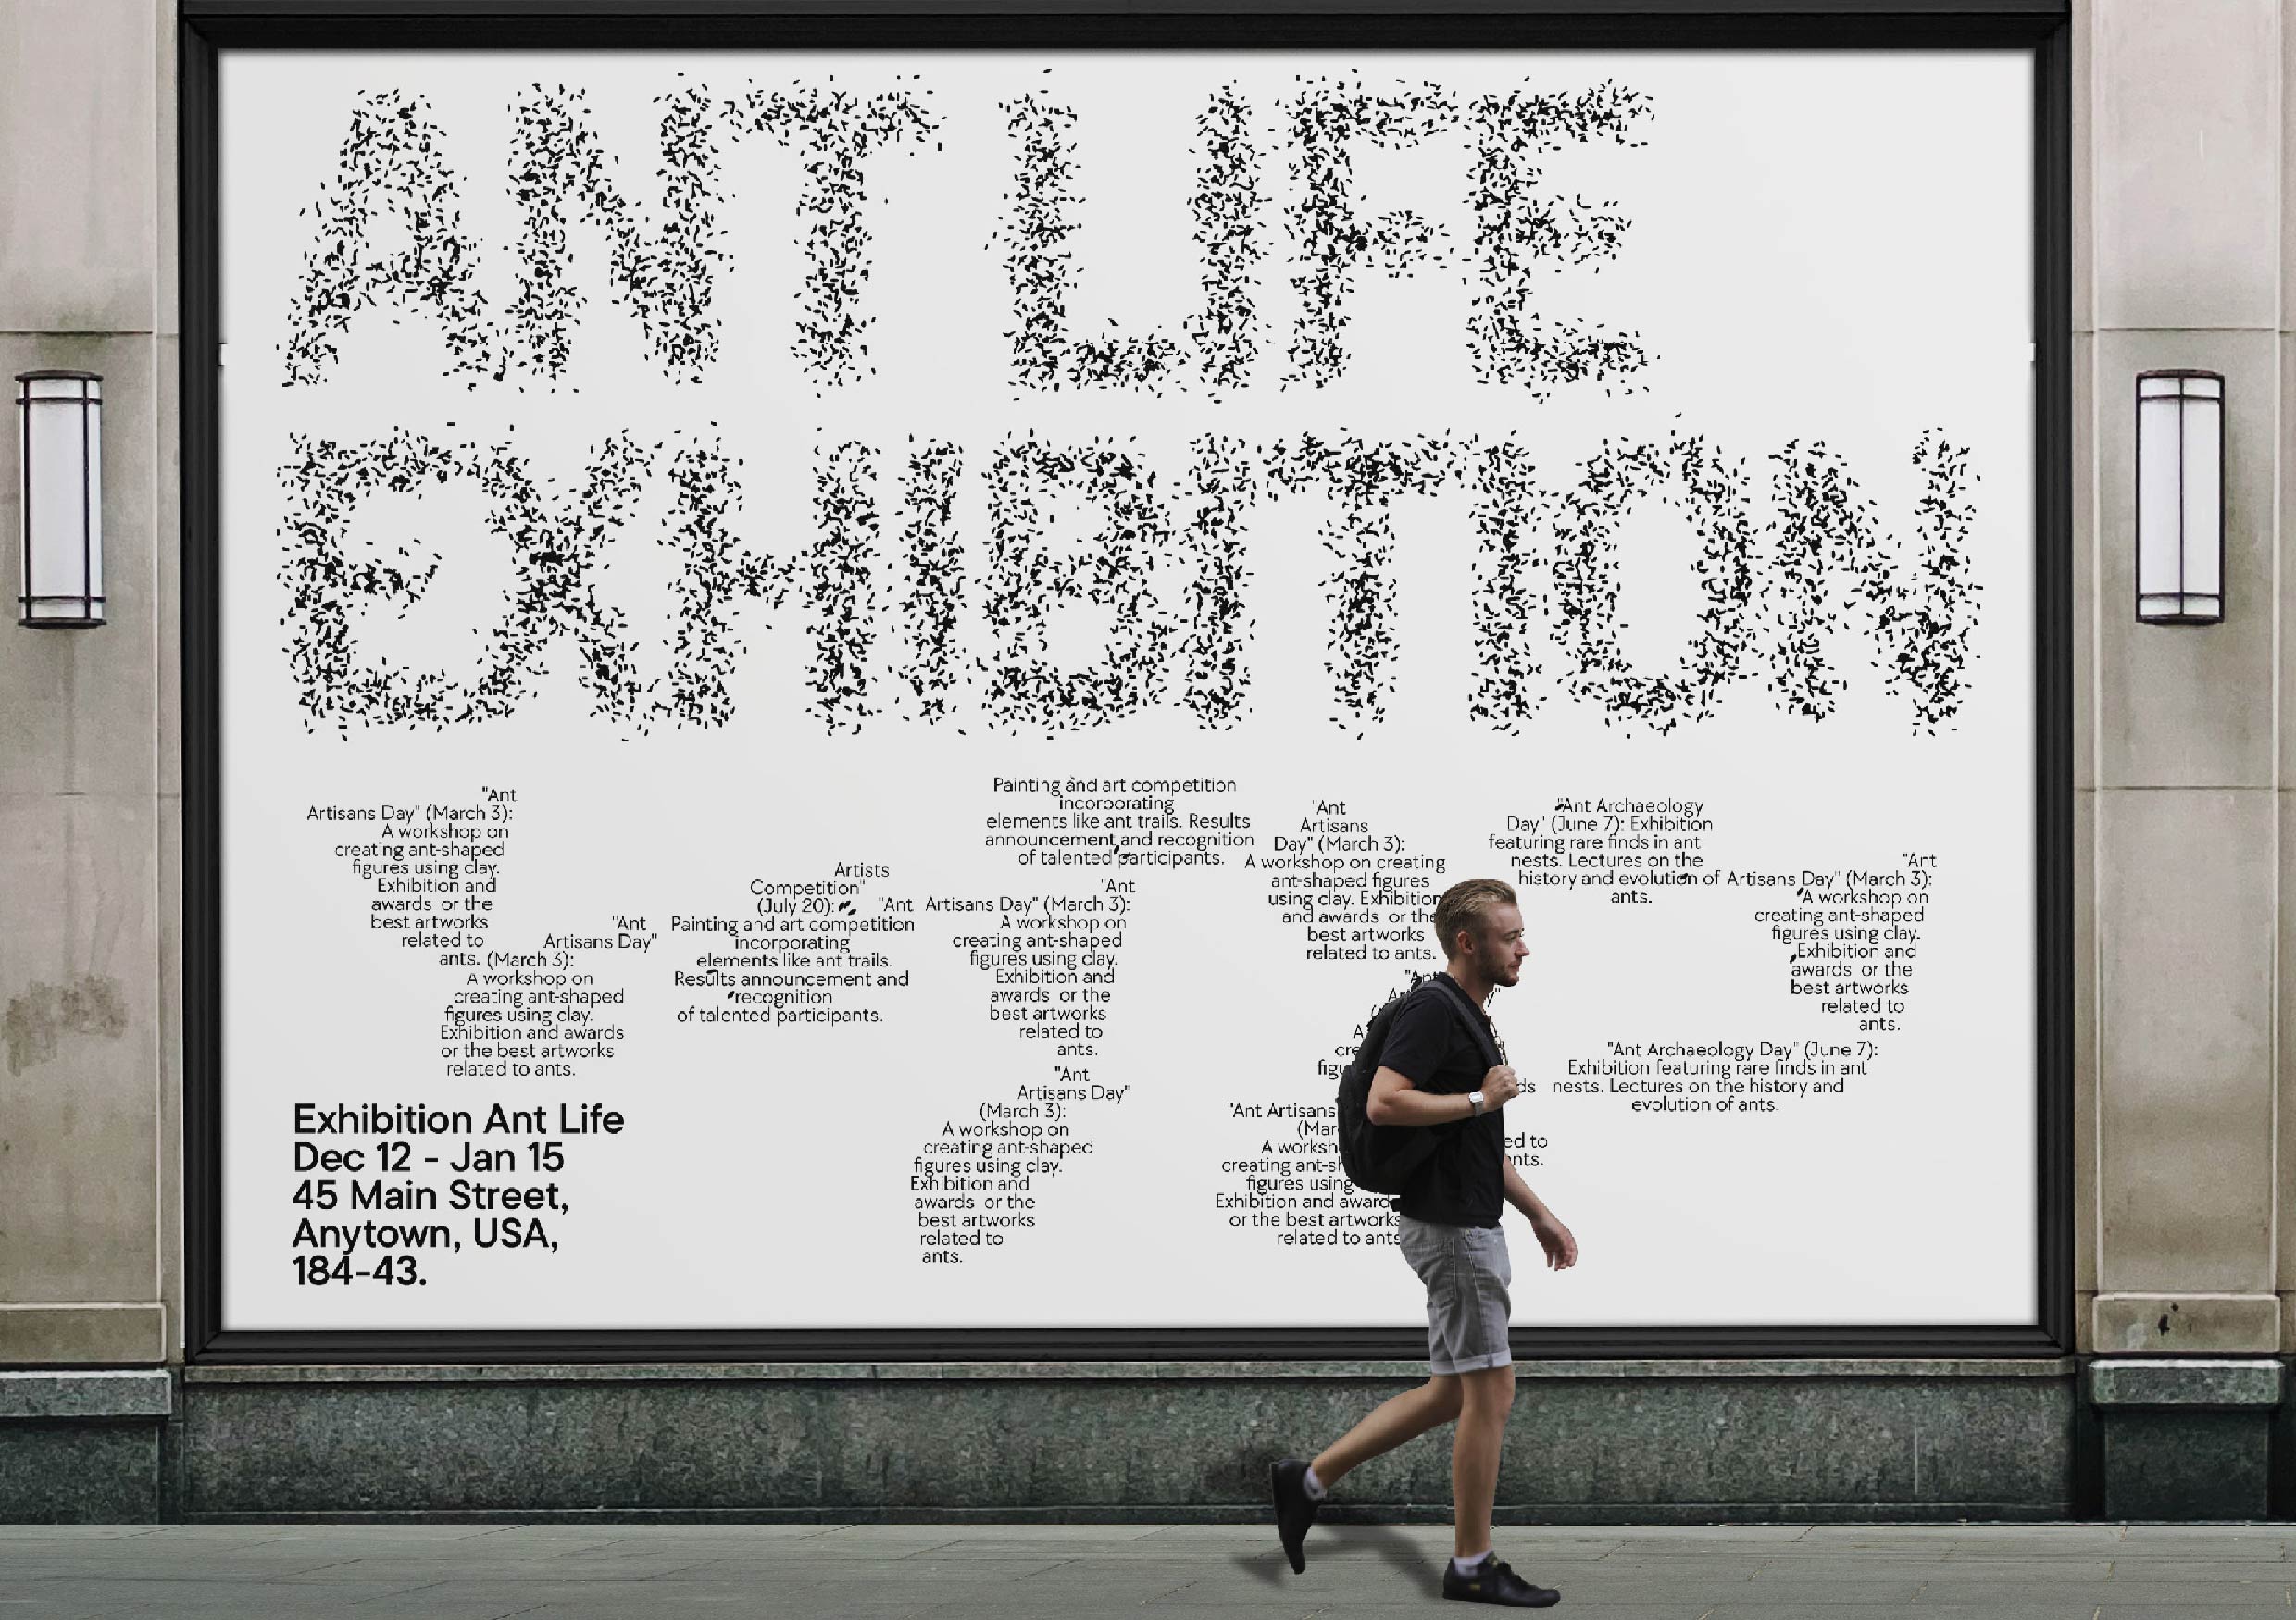 Exhibition Identity “Ant life” With Generative Graphics By Shchurova Diana